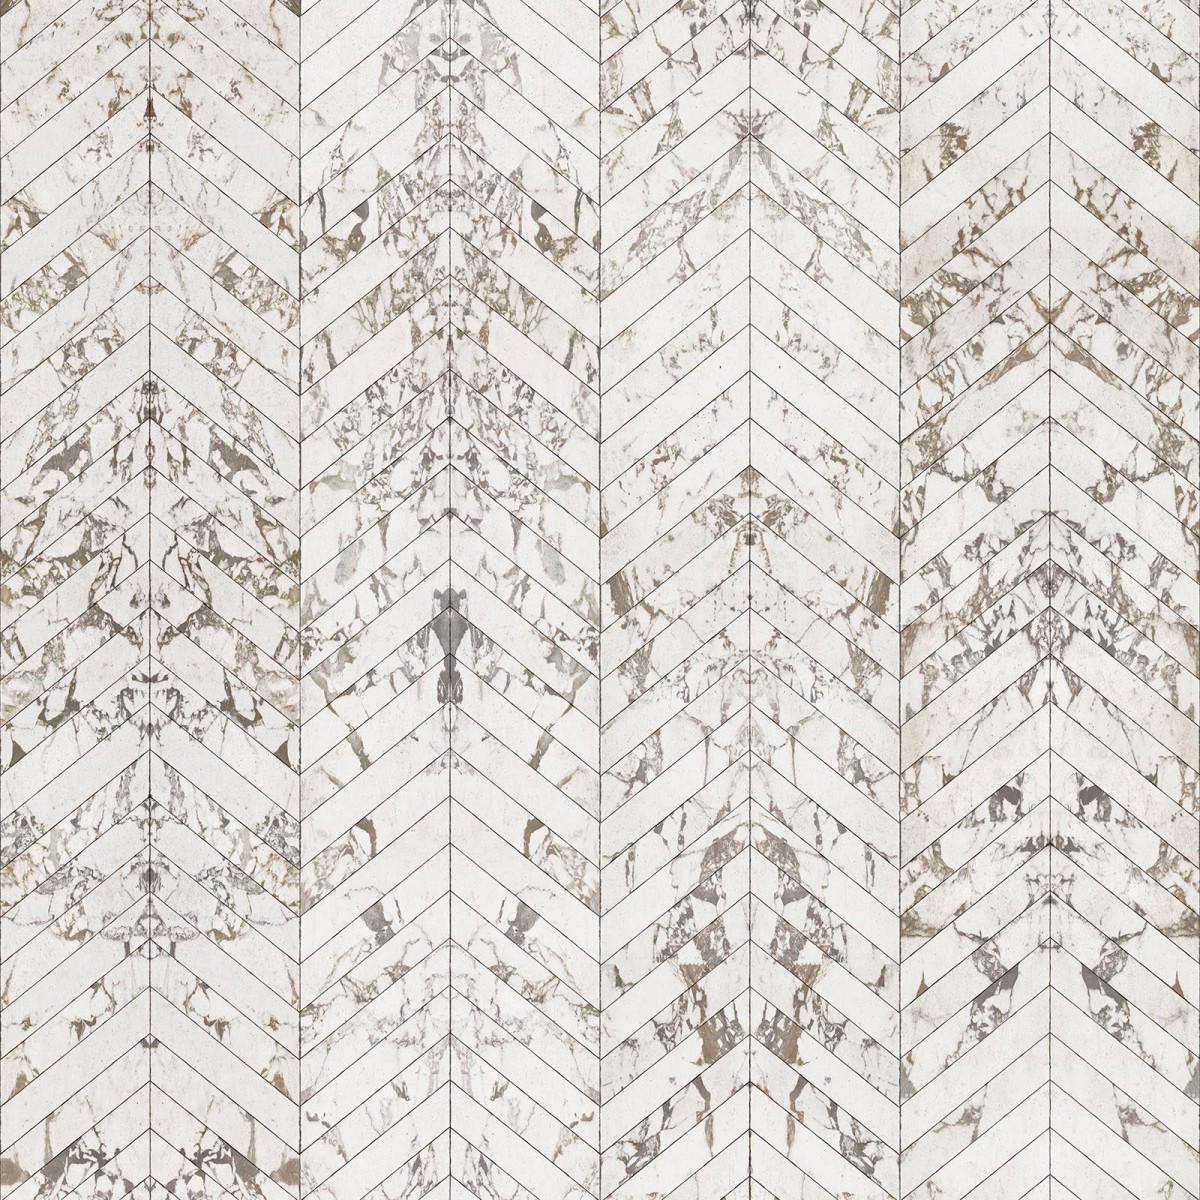 Tapet designer Materials Marble, Herring Bone, White by Piet Hein Eek, NLXL, 4.9mp / rola, Tapet Exclusivist 